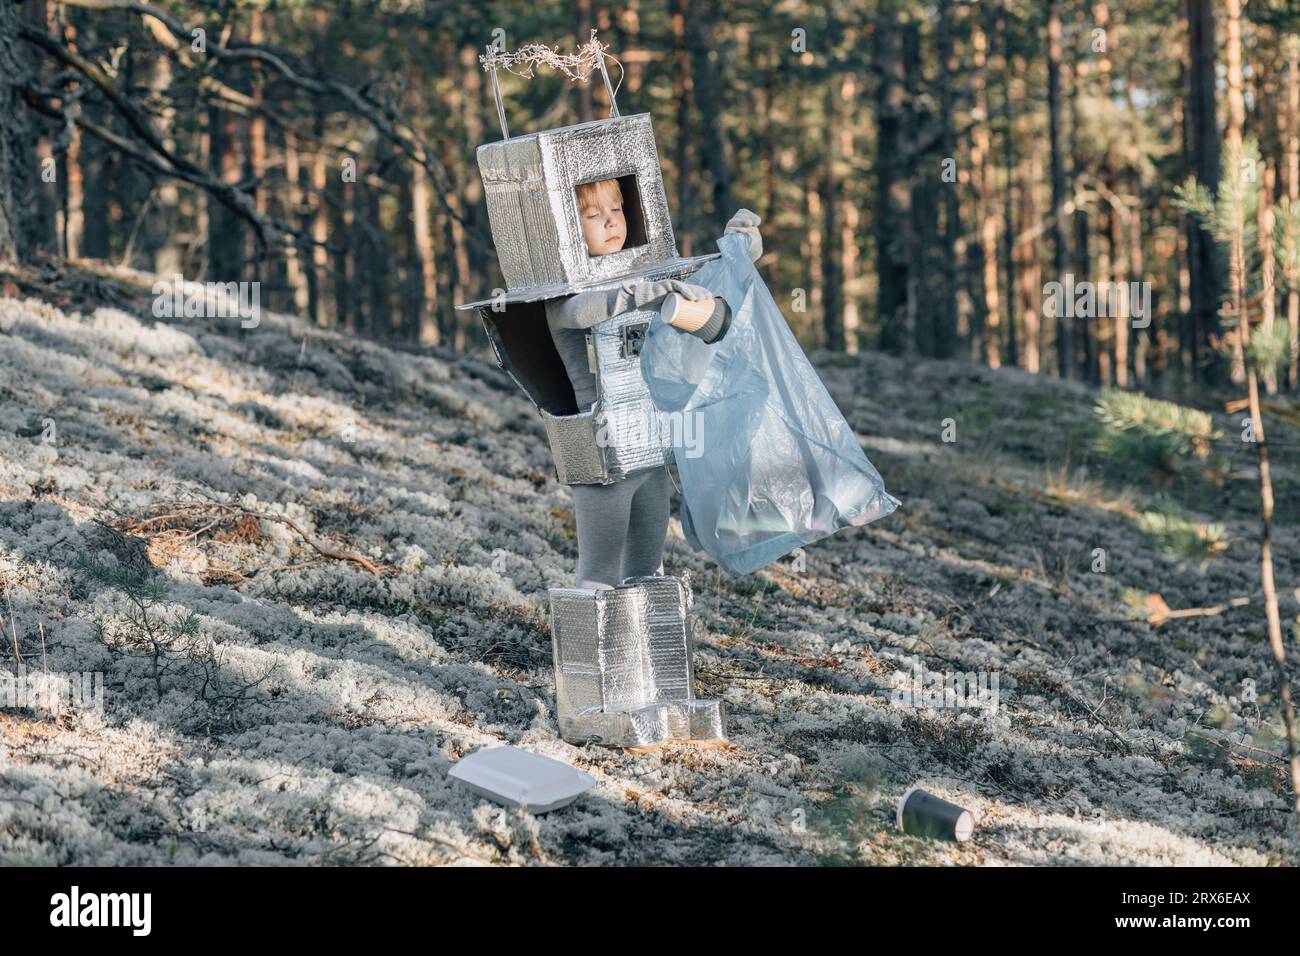 Junge im Astronautenkostüm reinigt Müll im Wald Stockfoto